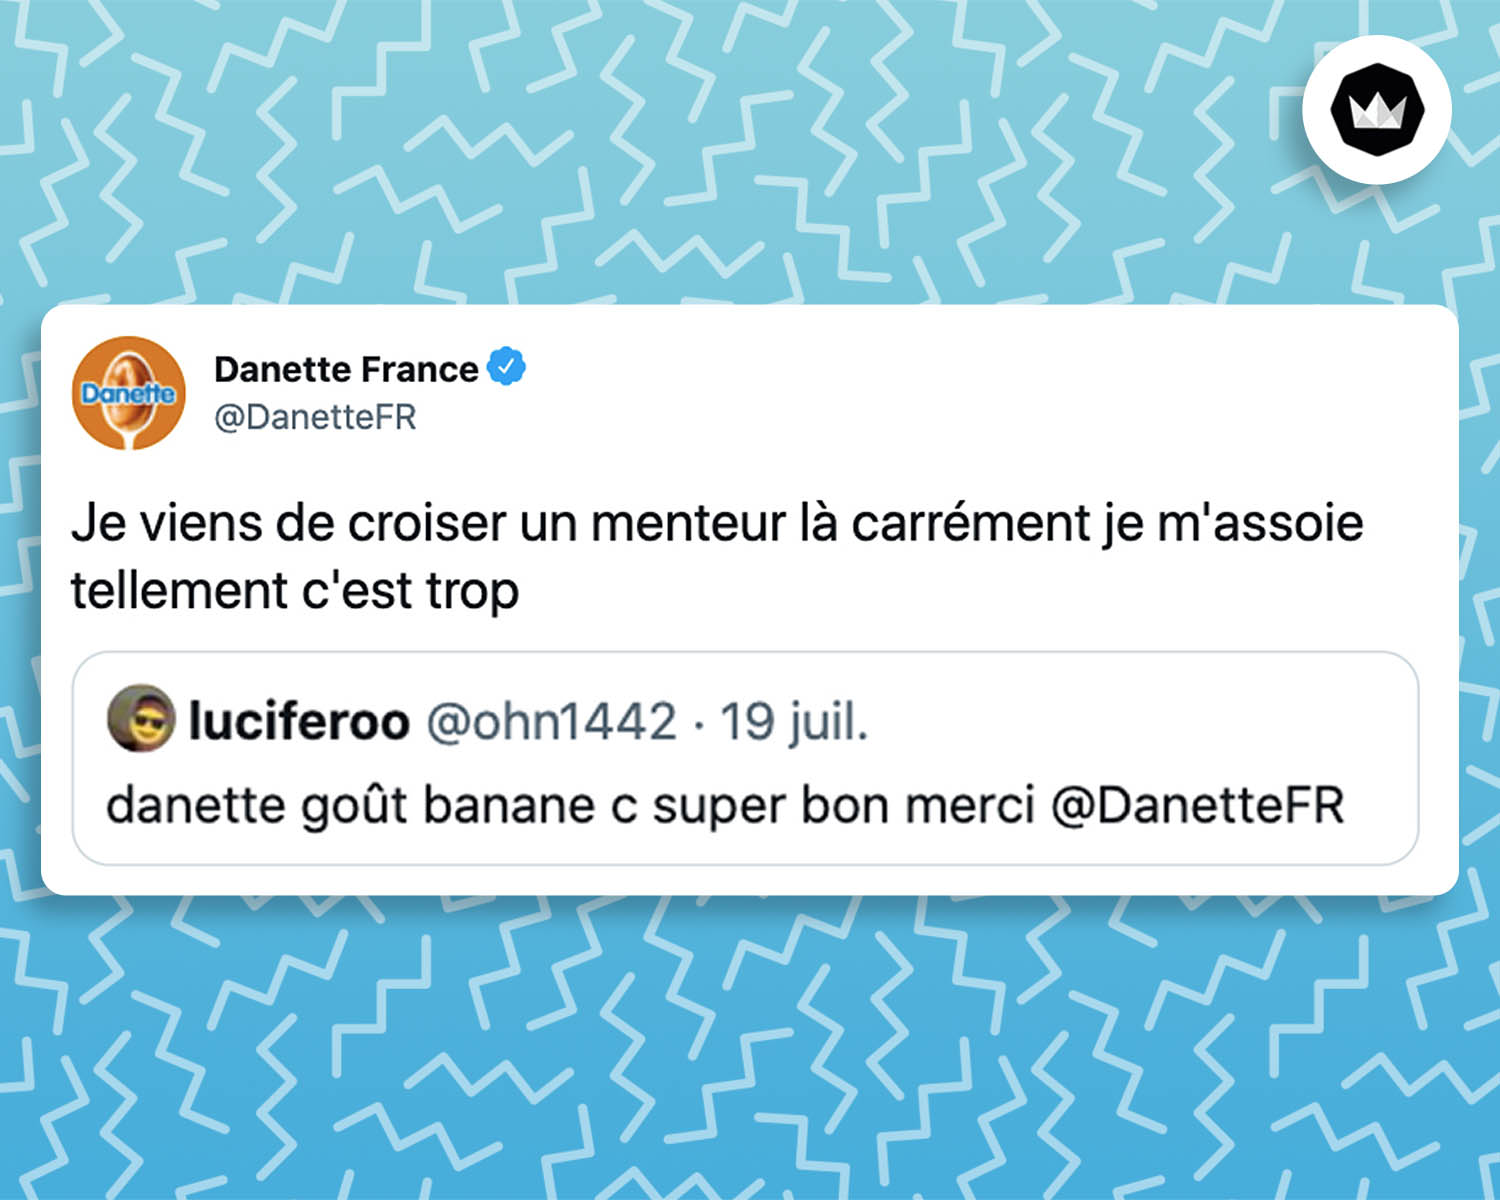 Tweet de Danette France : 
"Je viens de croiser un menteur là carrément je m'assoie tellement c'est trop"

C'est une réponse à un internaute : 
"internaute : danette goût banane c super bon merci @DanetteFR"